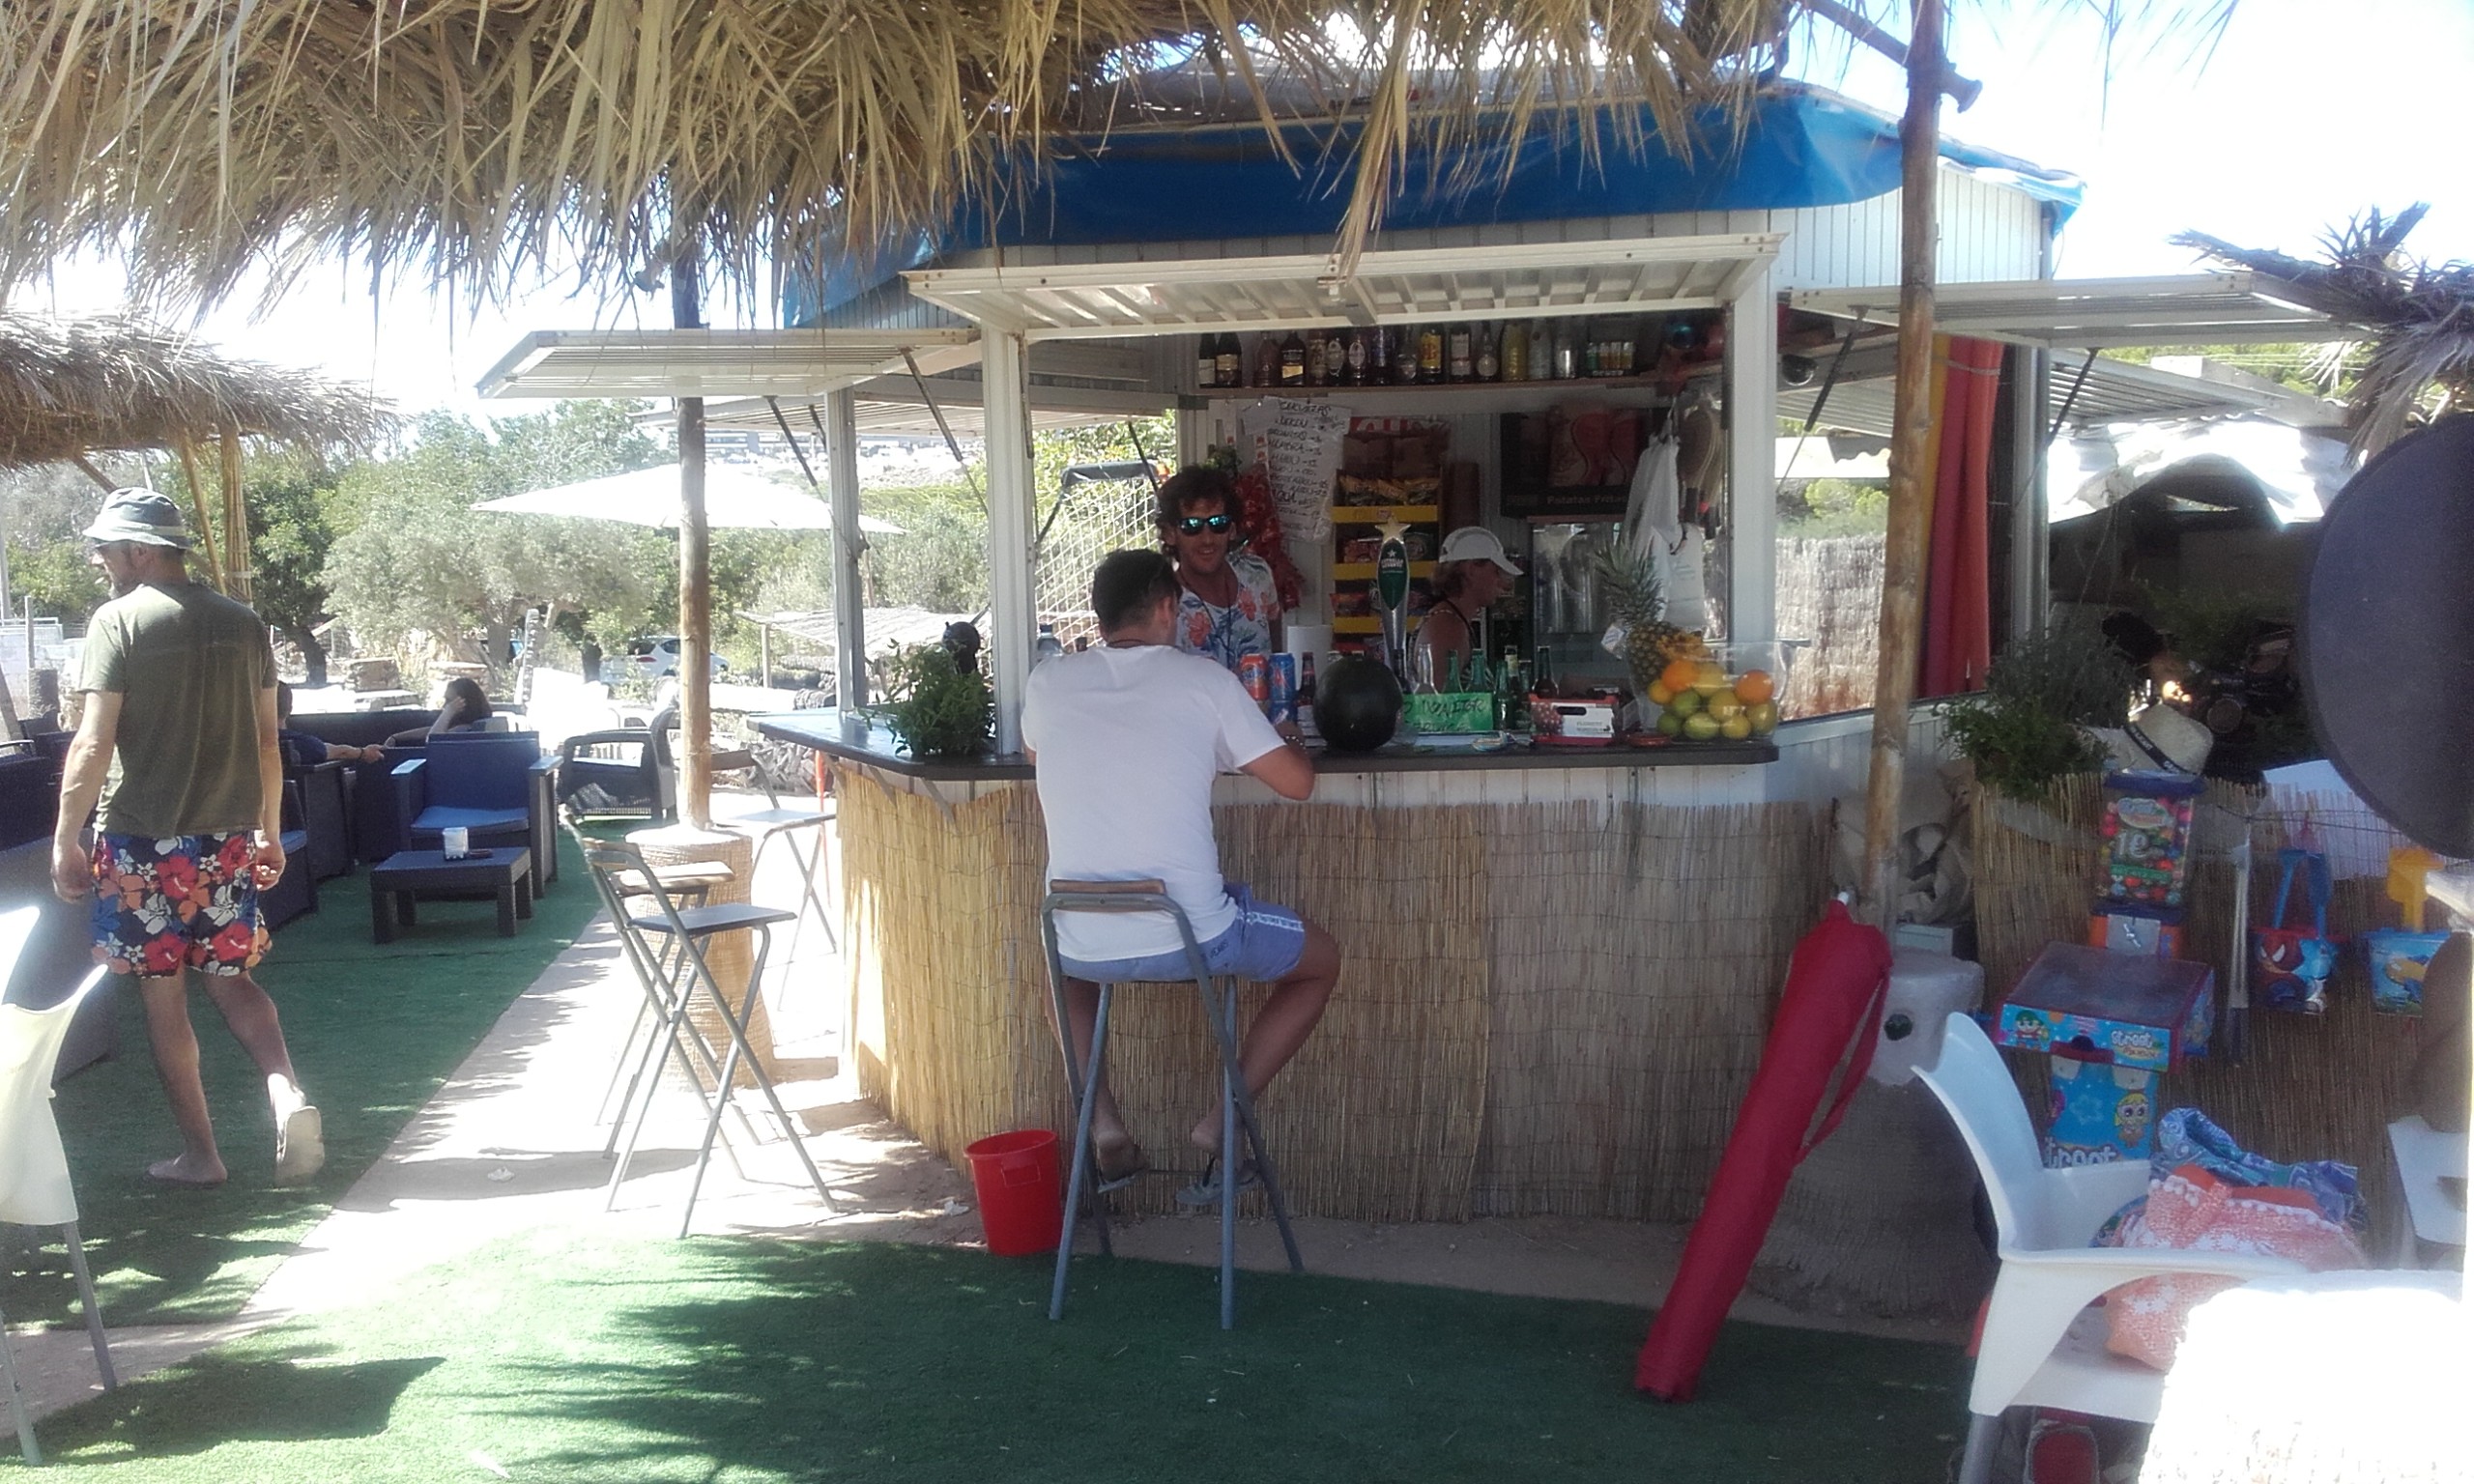 The closest beach bar